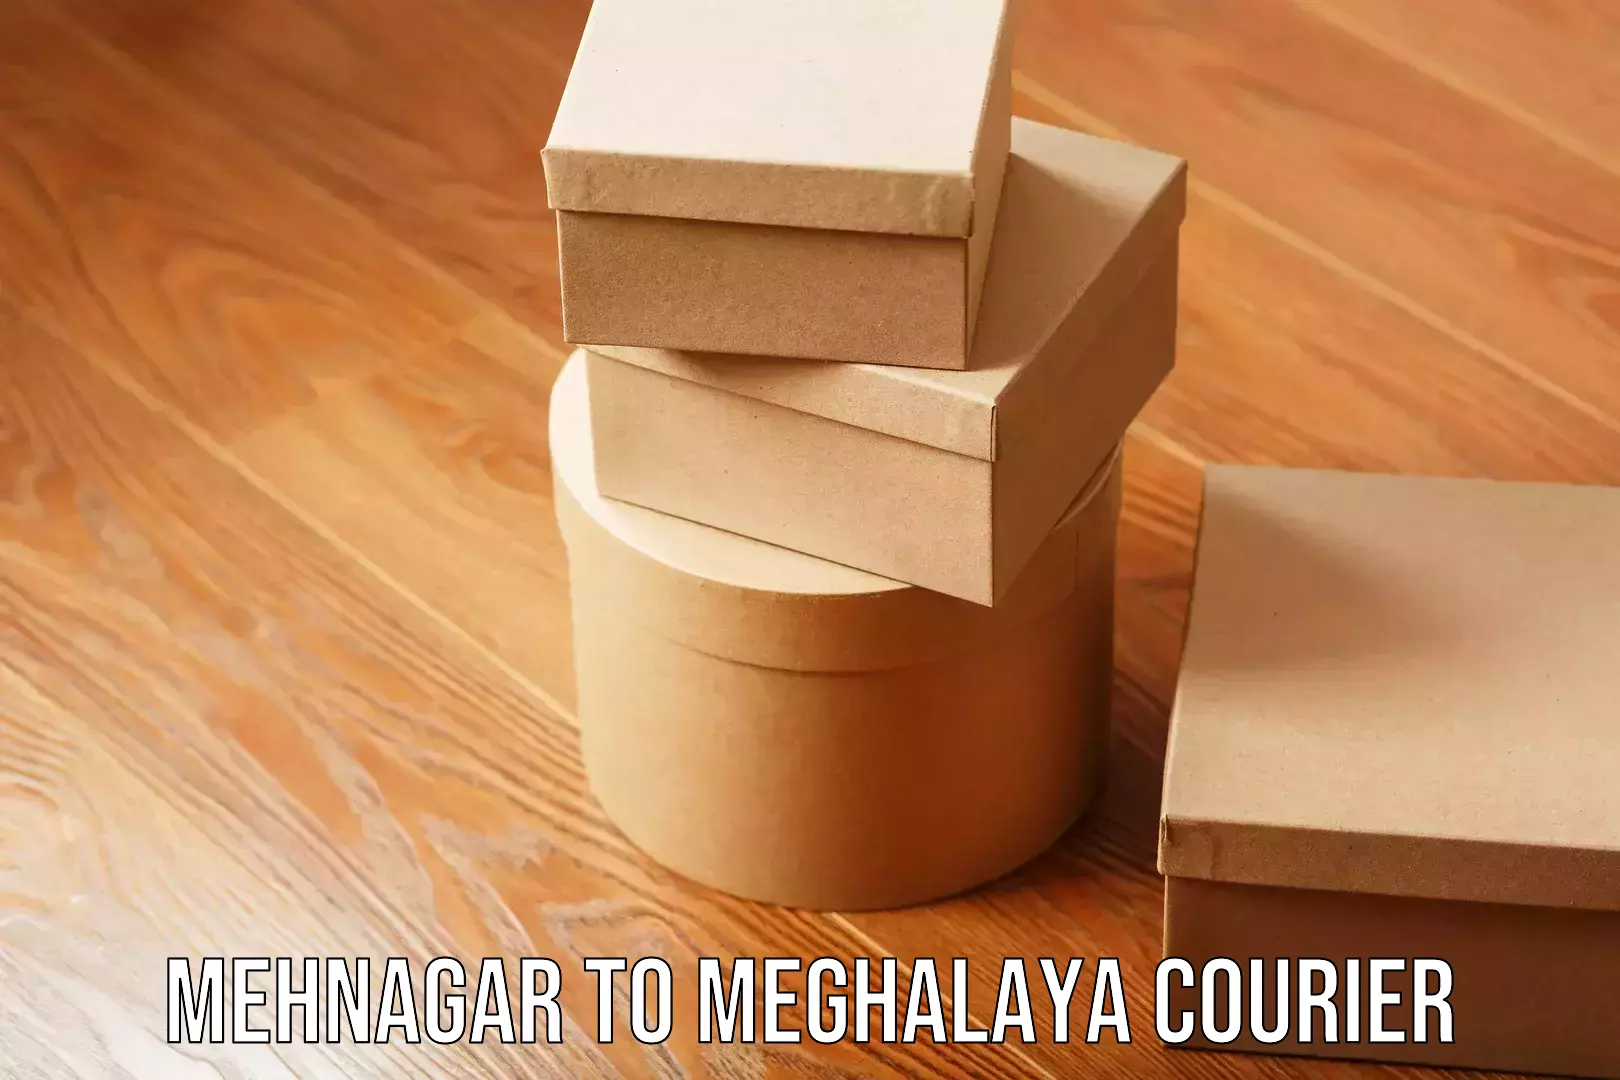 Nationwide furniture transport in Mehnagar to Meghalaya